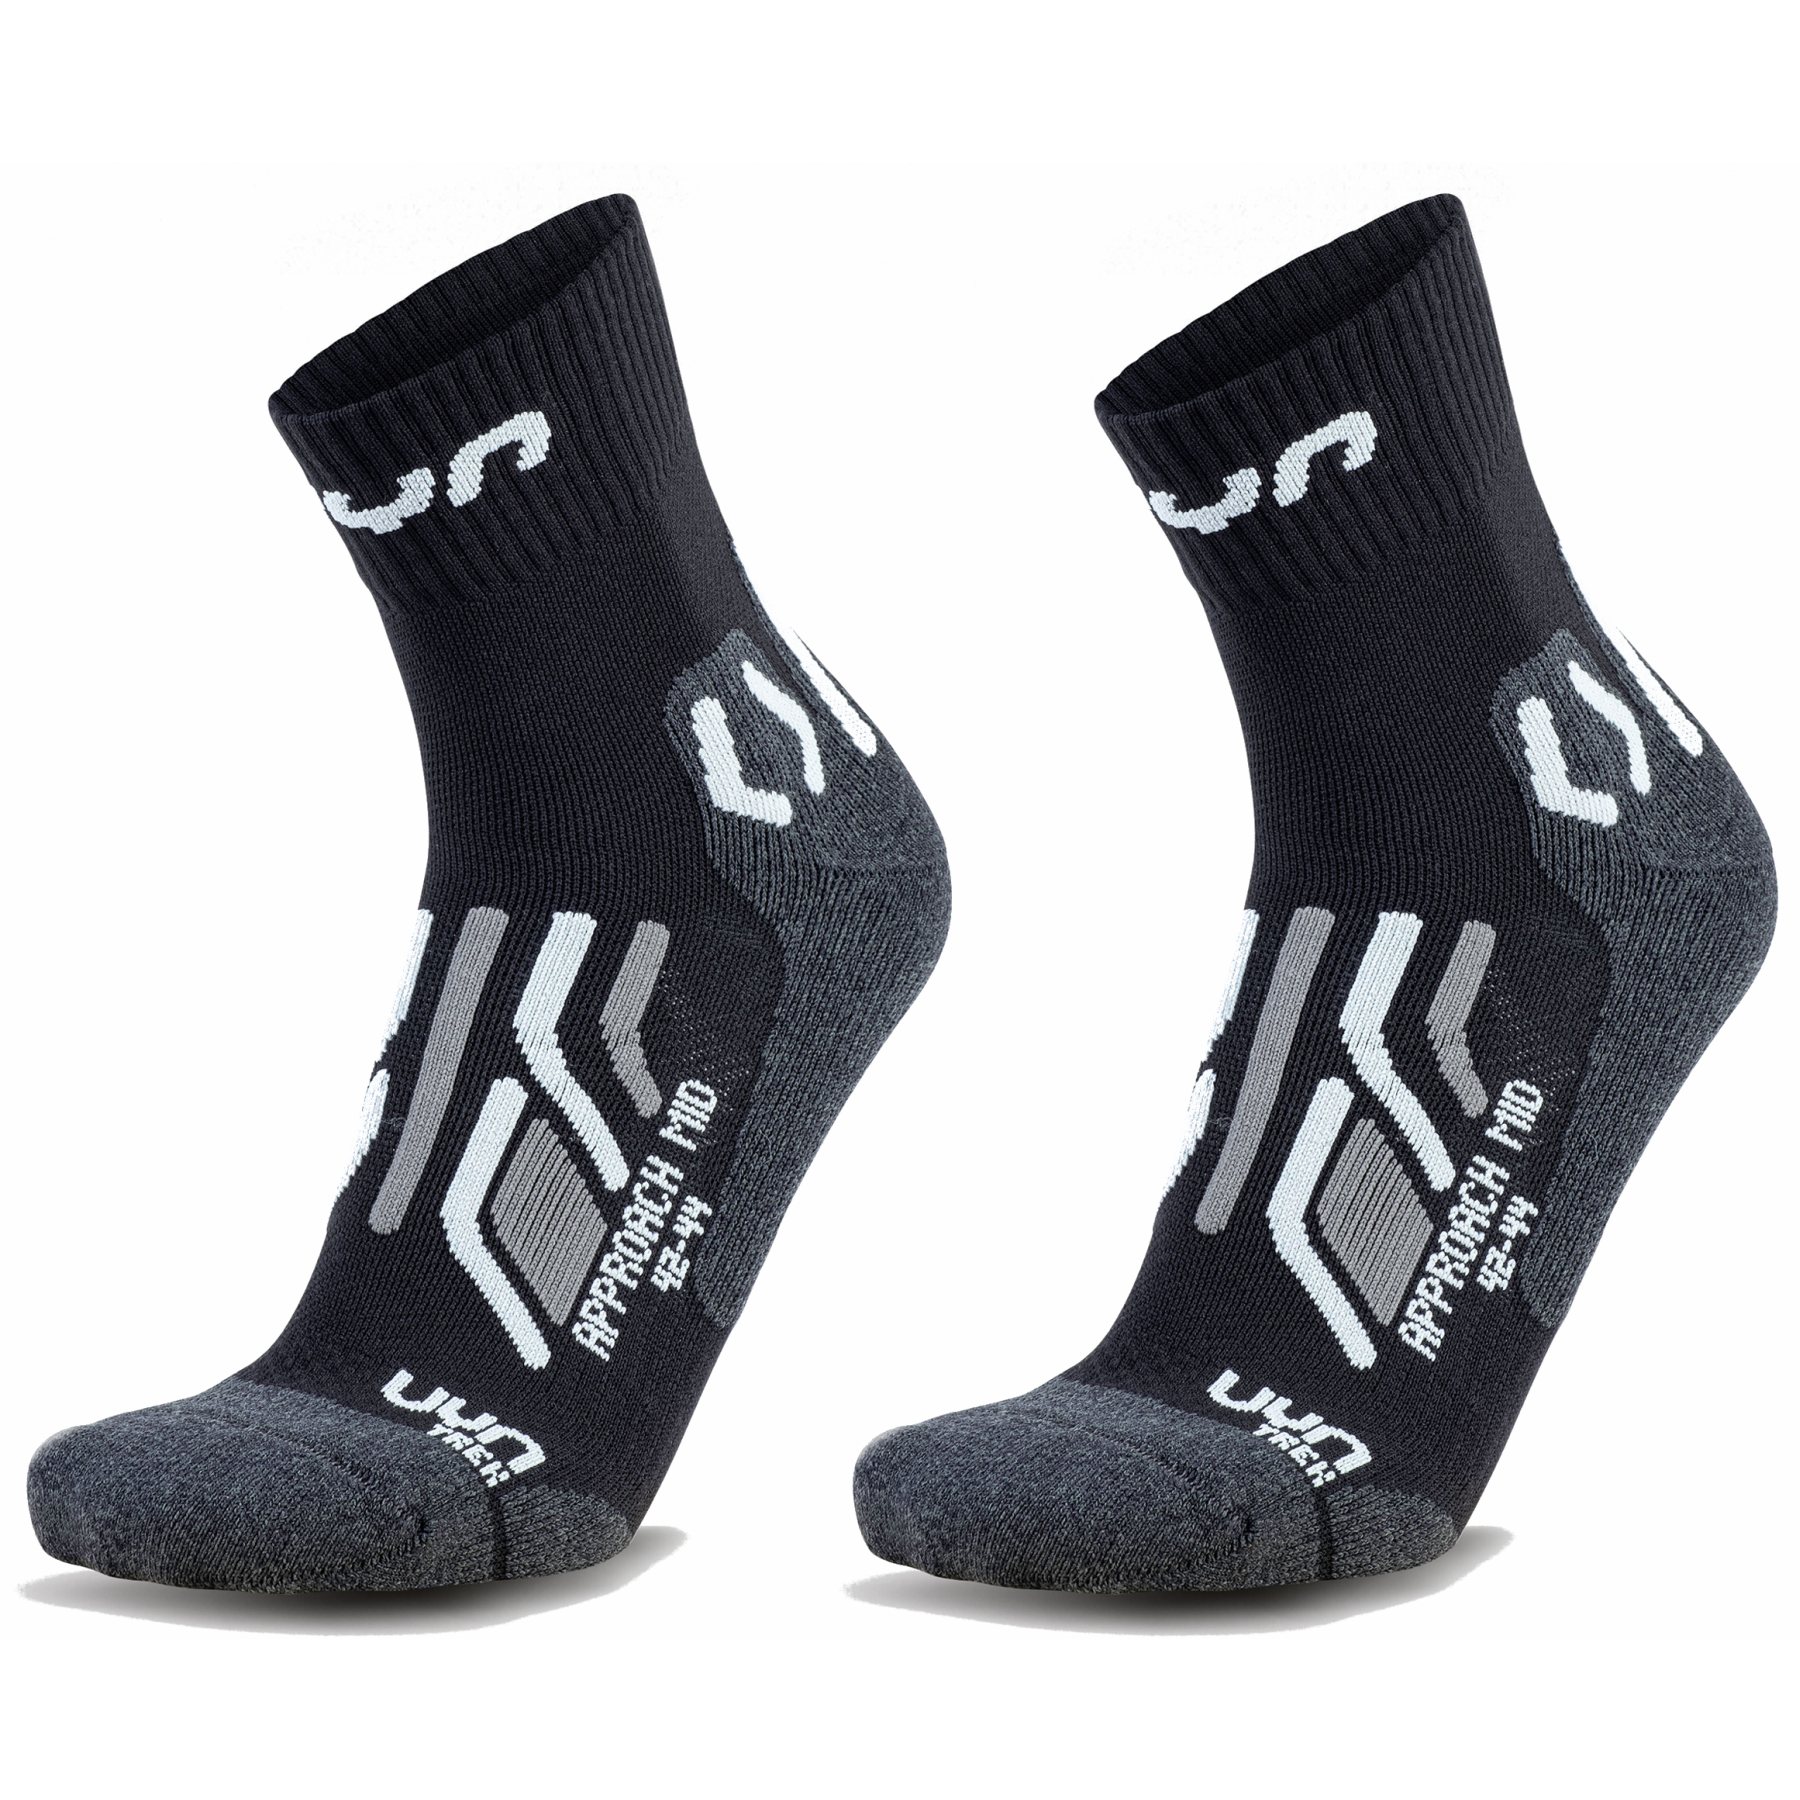 Produktbild von UYN Trekking Approach Mid Cut Socken Herren 2 Paar Pack - Schwarz/Grau